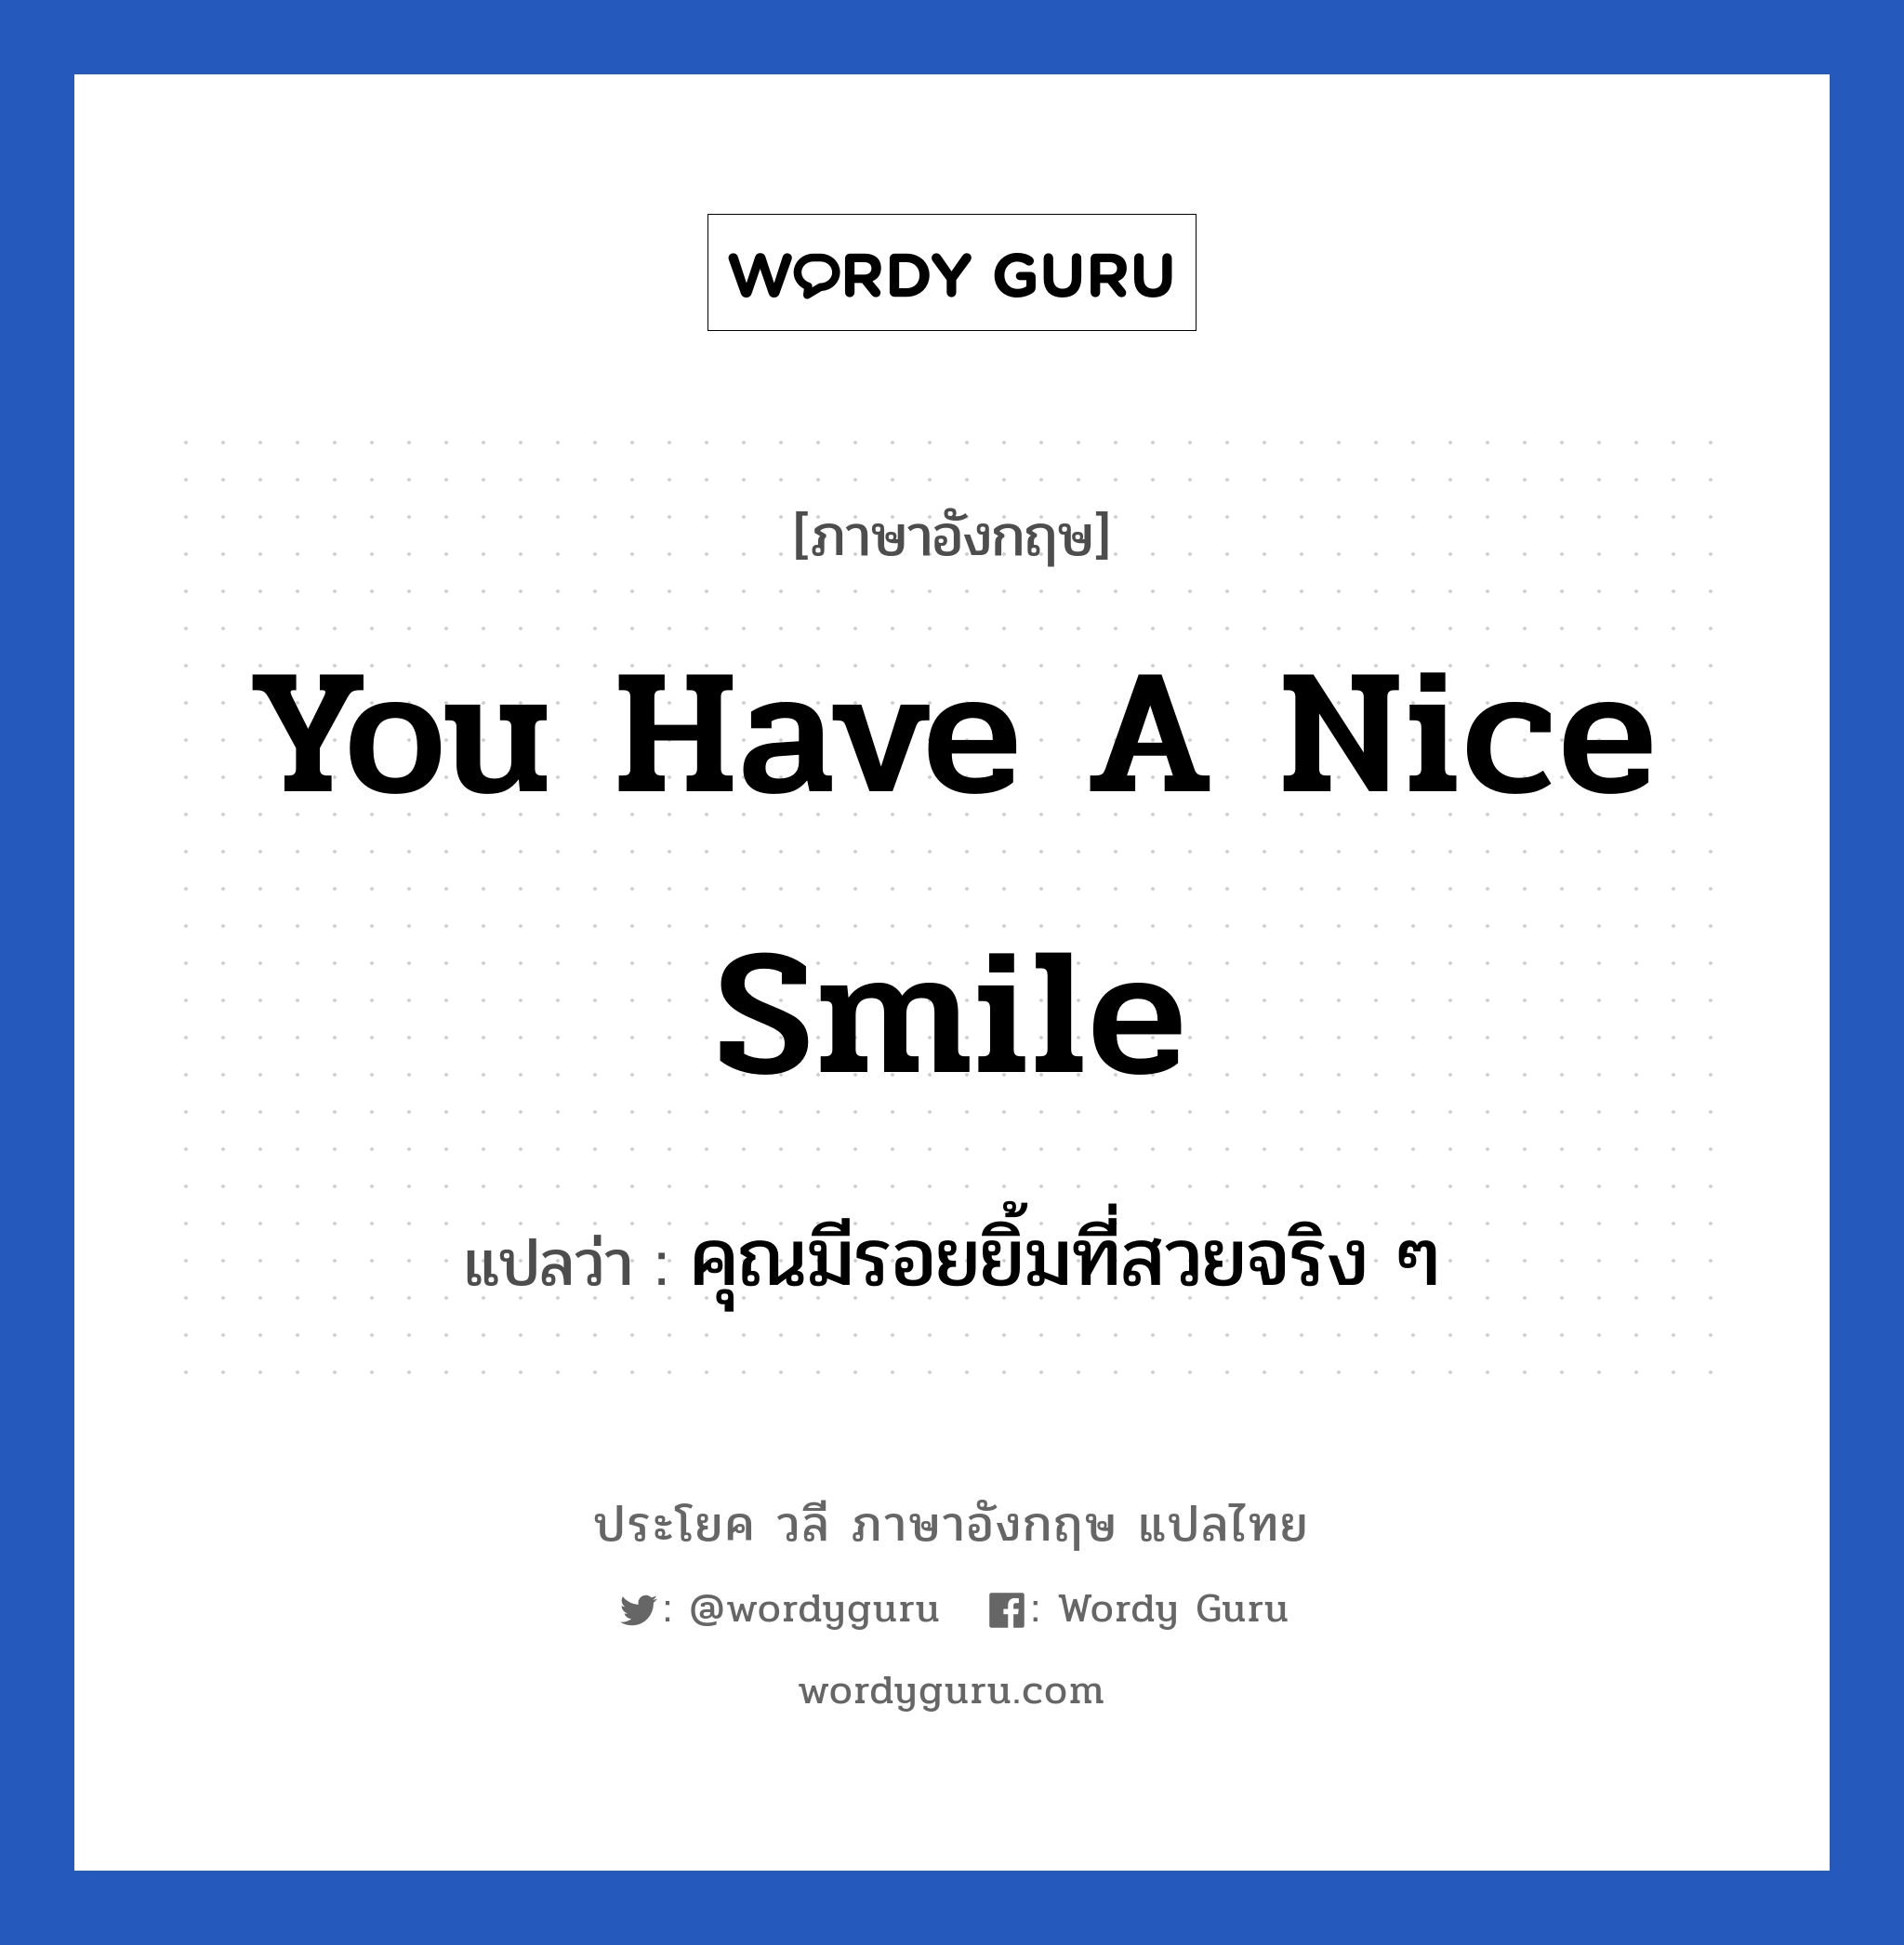 คุณมีรอยยิ้มที่สวยจริง ๆ ภาษาอังกฤษ?, วลีภาษาอังกฤษ คุณมีรอยยิ้มที่สวยจริง ๆ แปลว่า You have a nice smile หมวด คำชมเชย